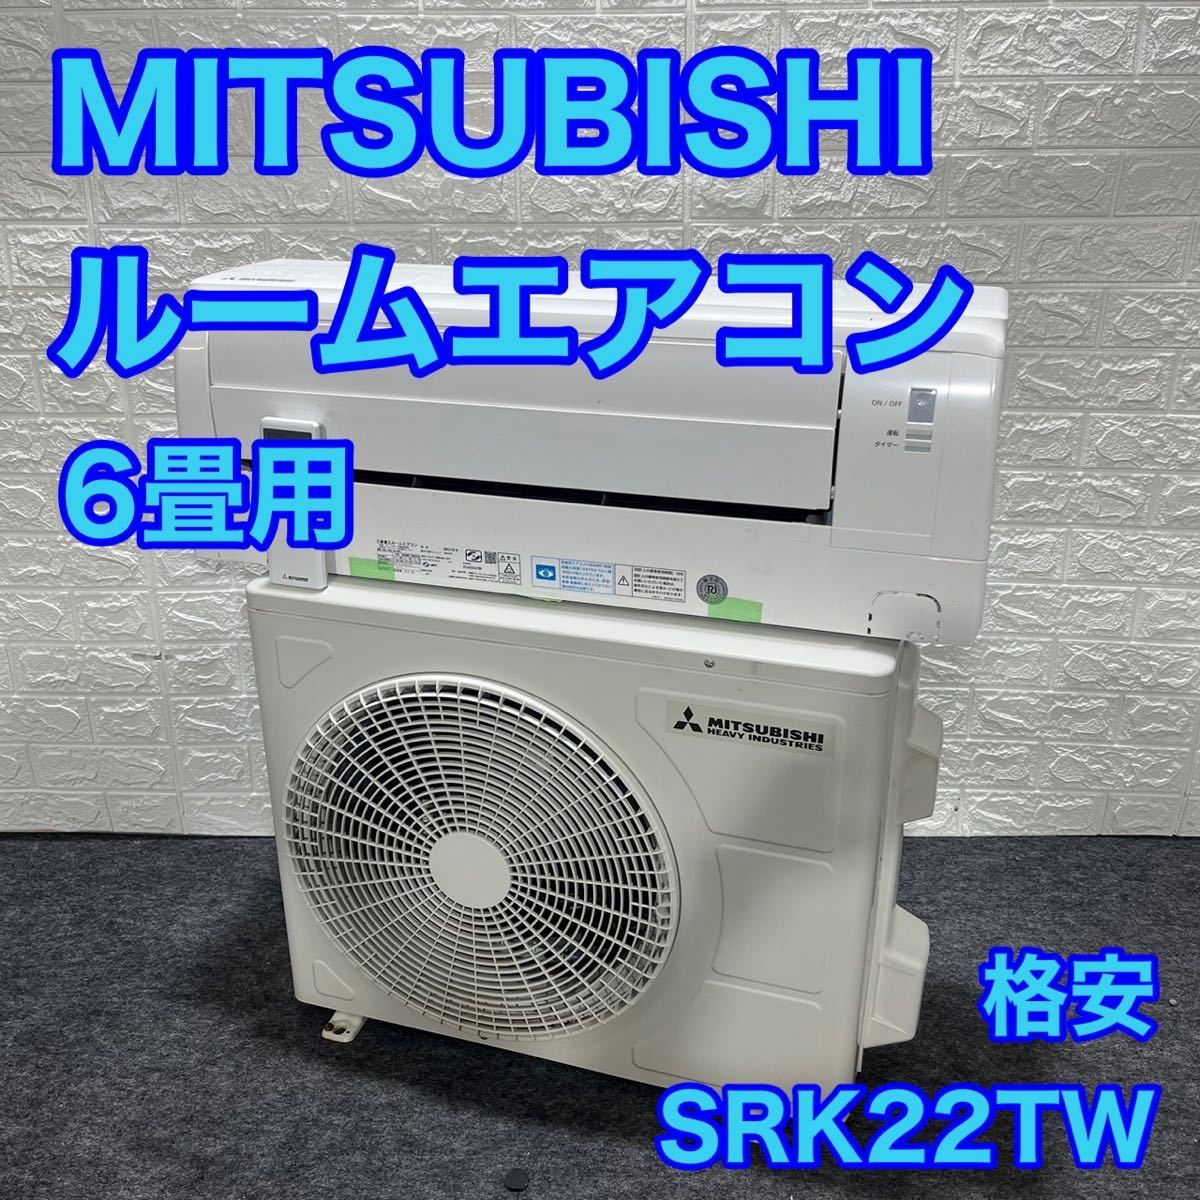 全日本送料無料 ルームエアコン MITSUBISHI 6畳用 ビーバーエアコン